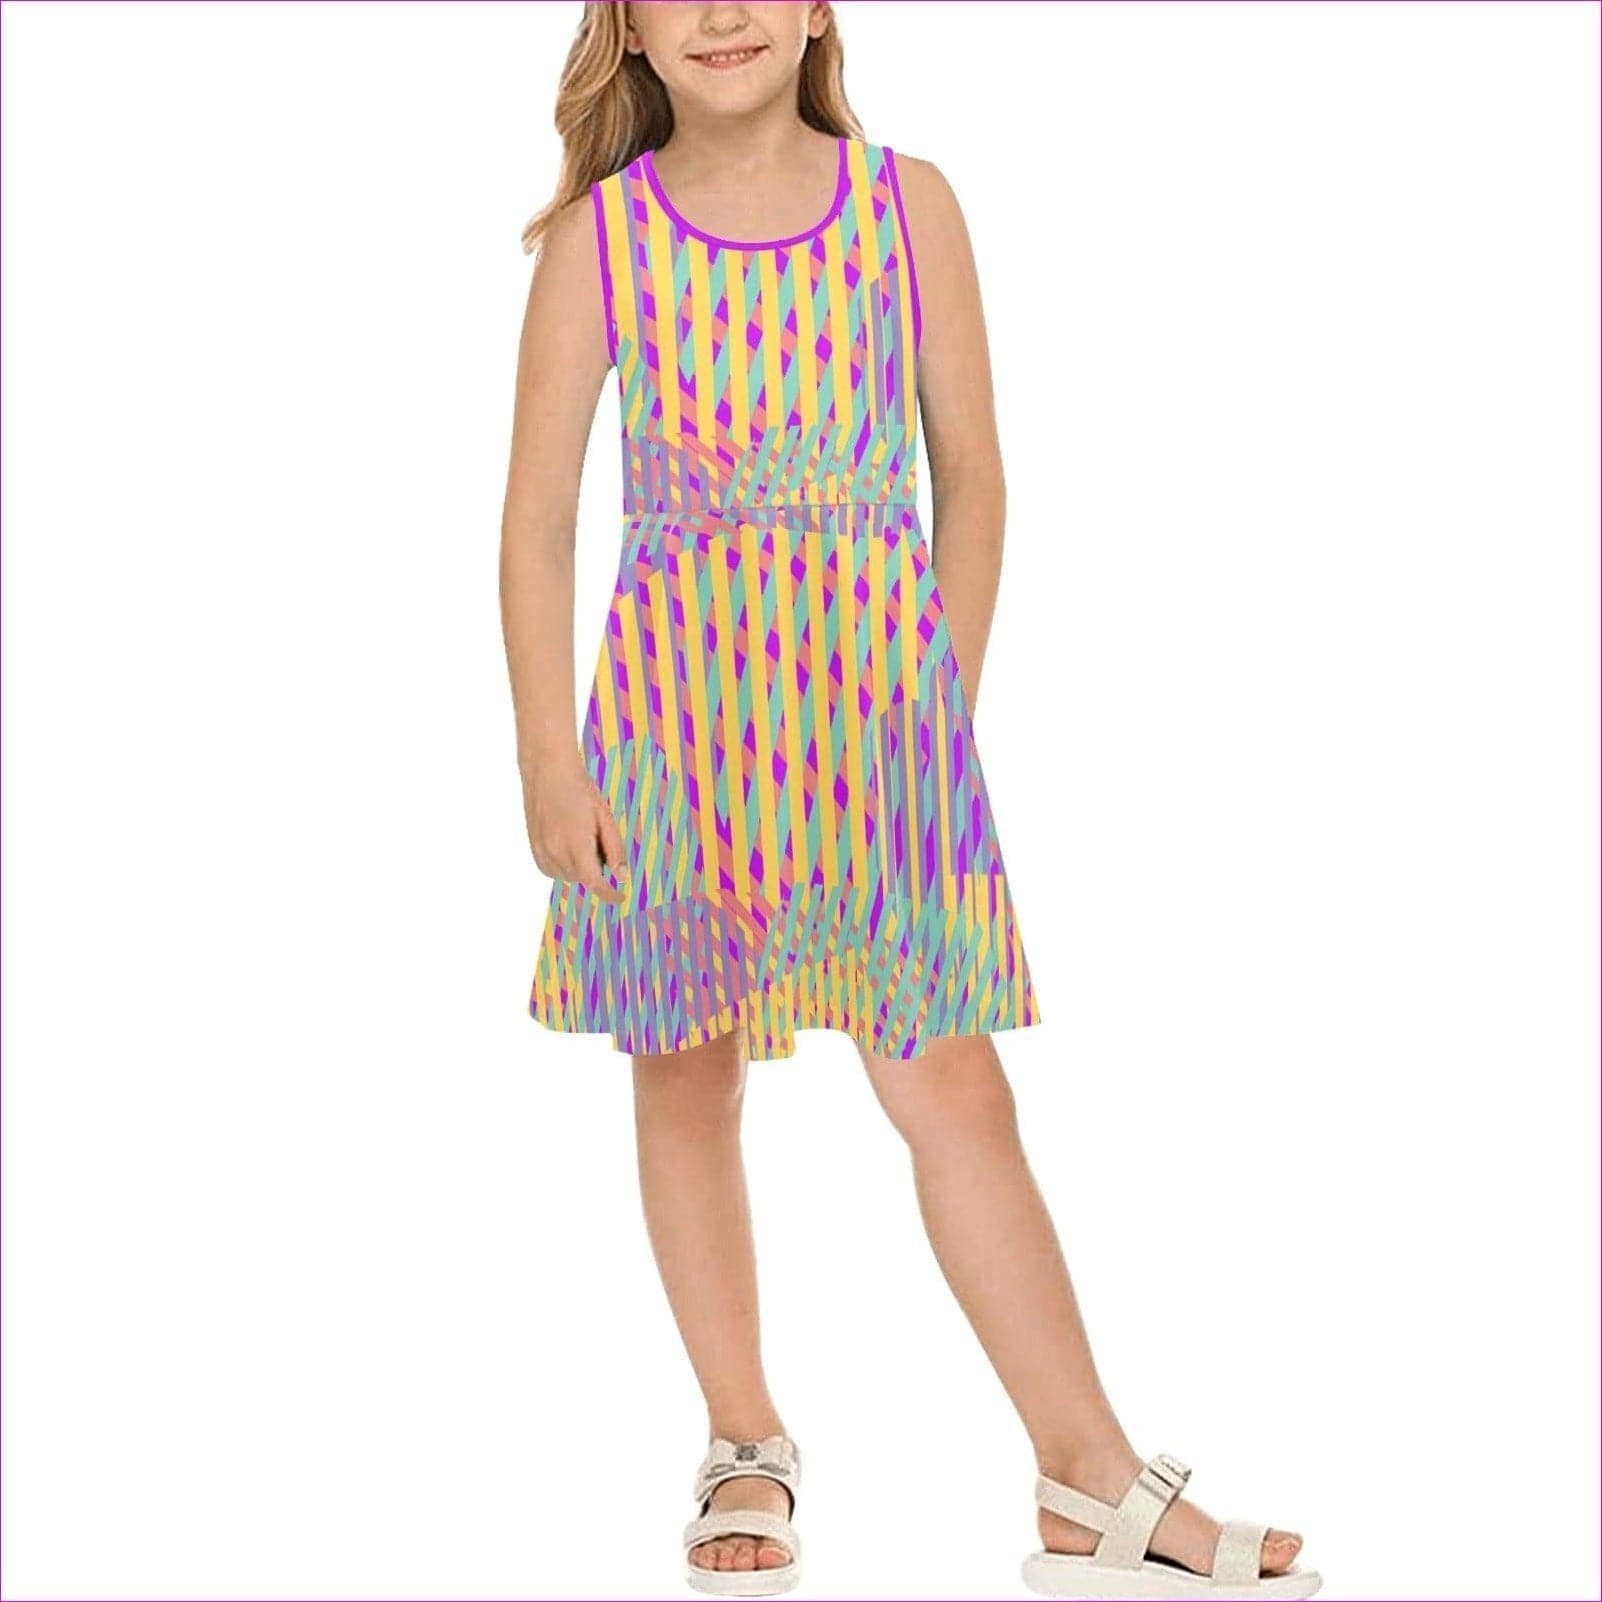 Vivid Weaved Girls Sleeveless Sundress - girl's dress at TFC&H Co.